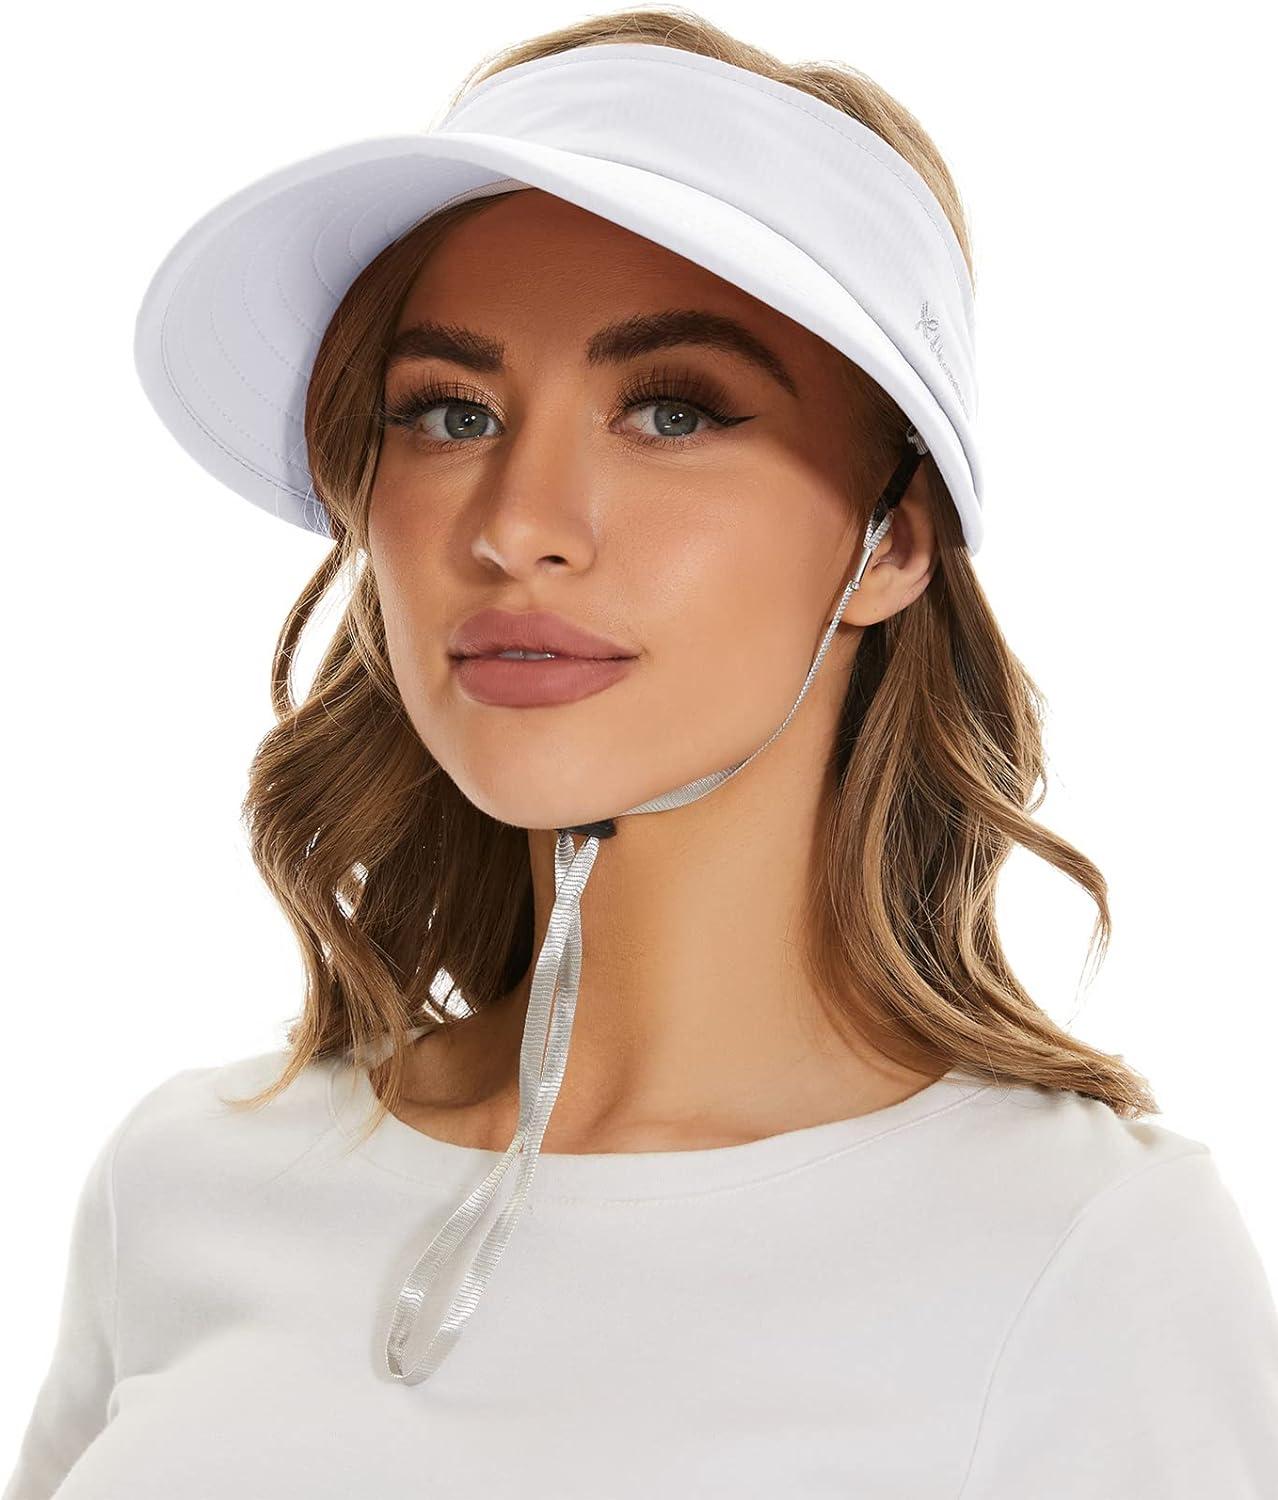 Extra Wide Brim Sun Visor Packable Open Top Bucket Hats Women UV